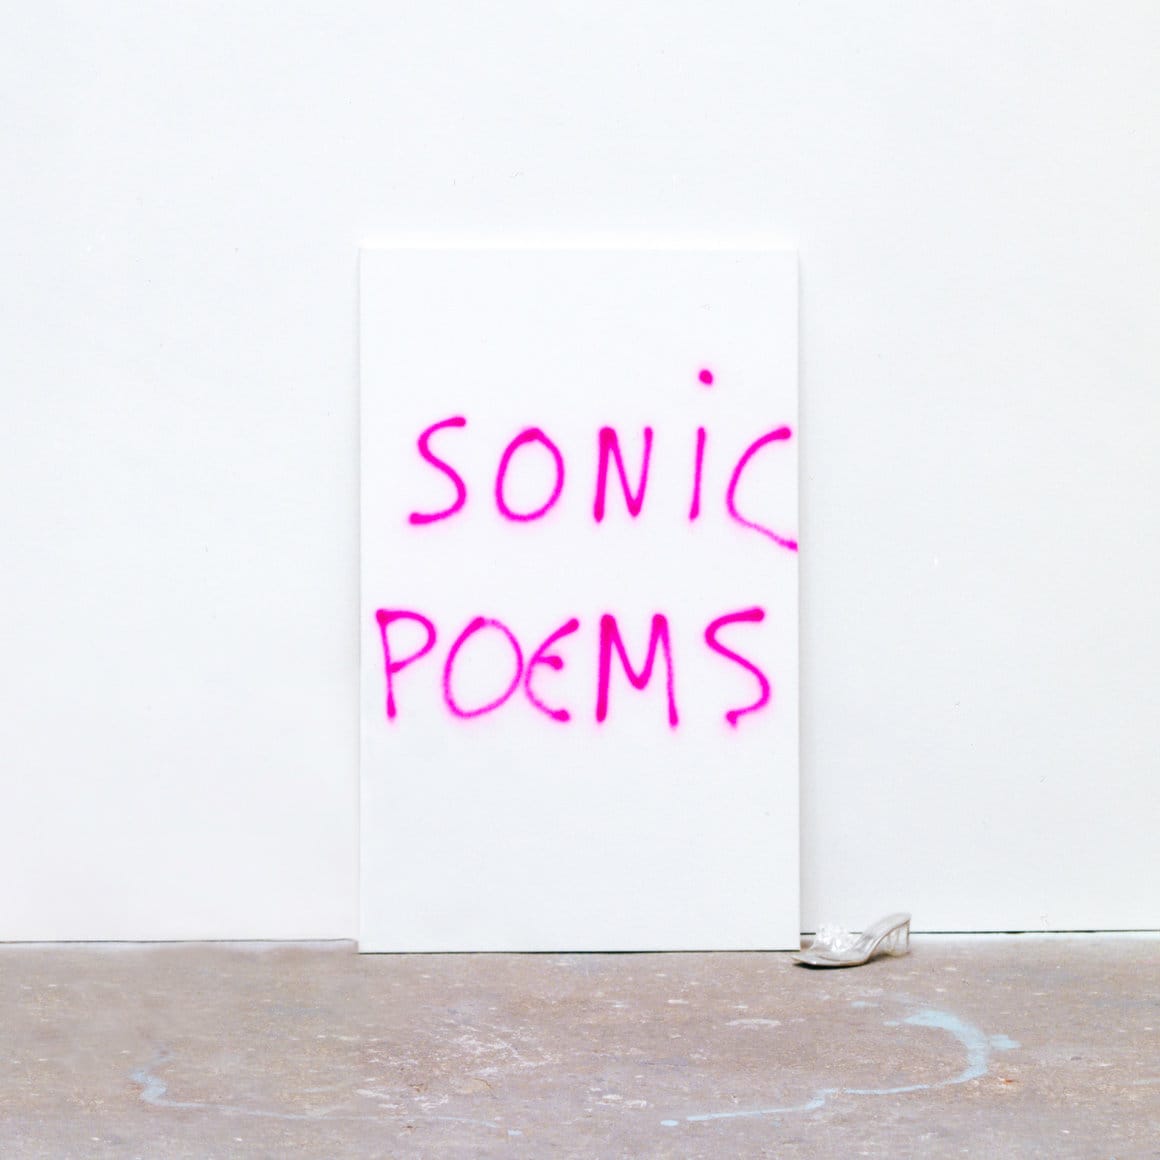 Sonic Poems, premier album de l'artiste musicien Lewis OfMan précédemment connu avec ses singles attitude ou boom boom